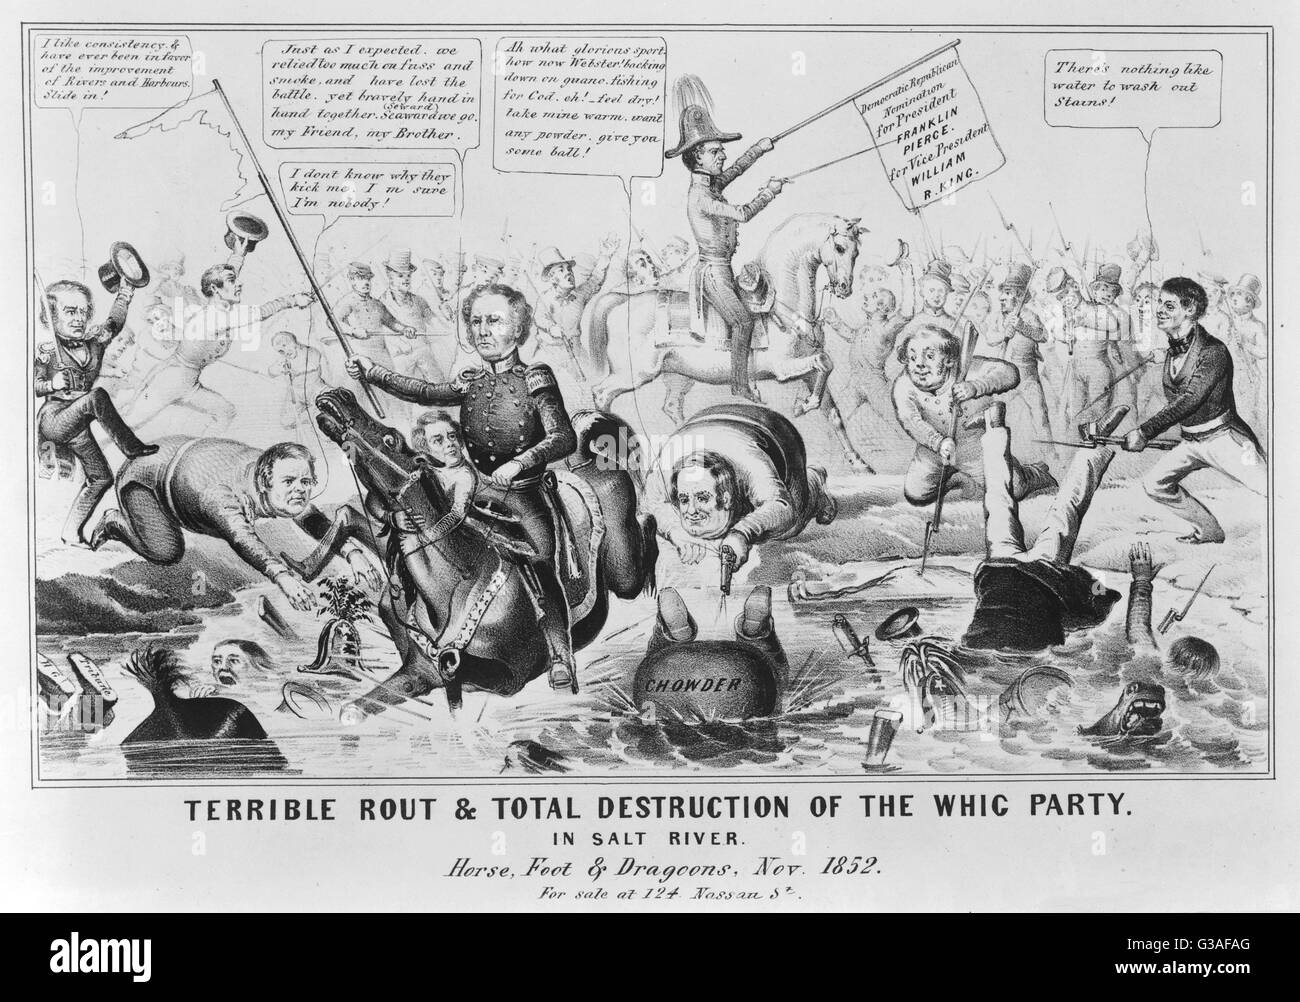 Schreckliche Niederlage &amp; Totalzerstörung der Whig Party. In Salt River. Der 1852 demokratischen Sieg unter dem Standard von Franklin Pierce ist ein Debakel für die Whig-Partei, unter der Leitung von Winfield Scott geplant. Pierce (Mitte) sitzt auf seinem Pferd hochhalten Stockfoto